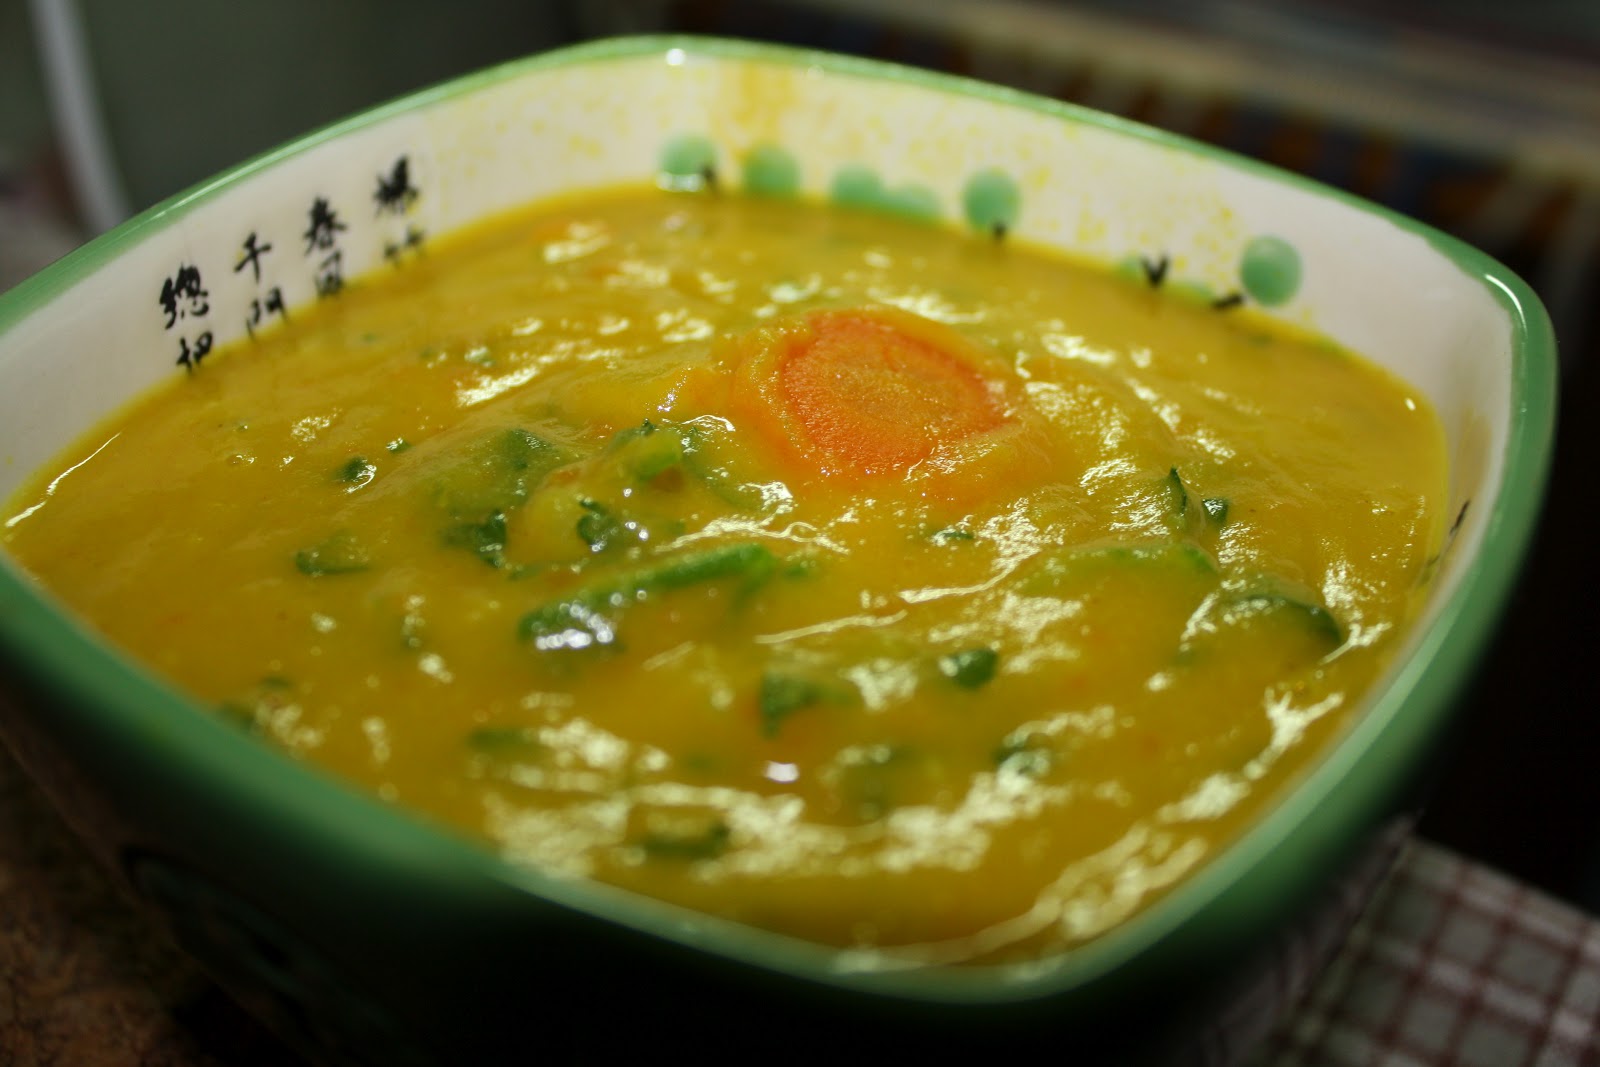 Овощной суп пюре фото